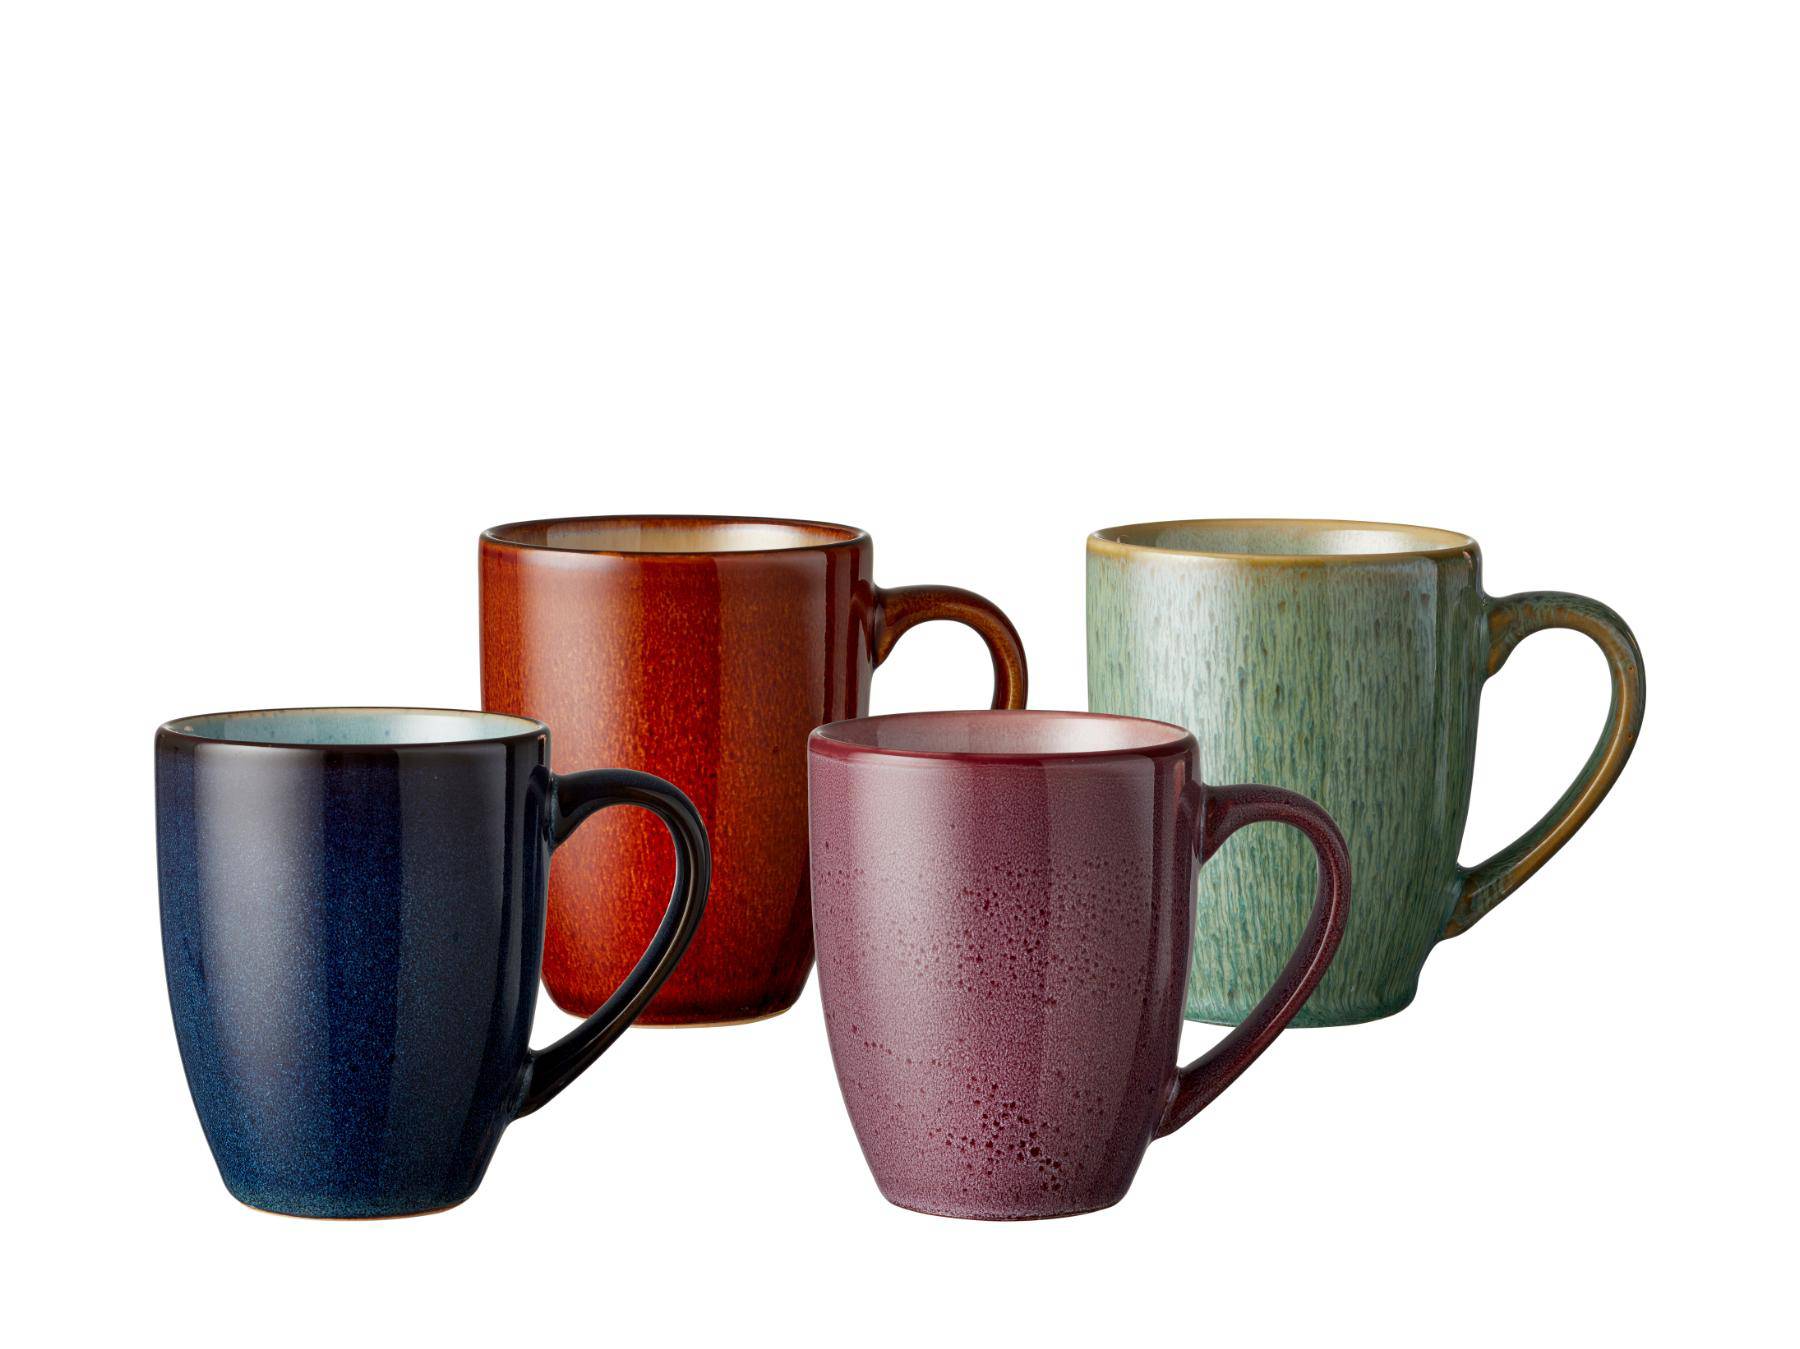 Bitz (koffie / thee) mok verschillende kleuren 300 ml - set van 4 stuks - Accessoire Loods